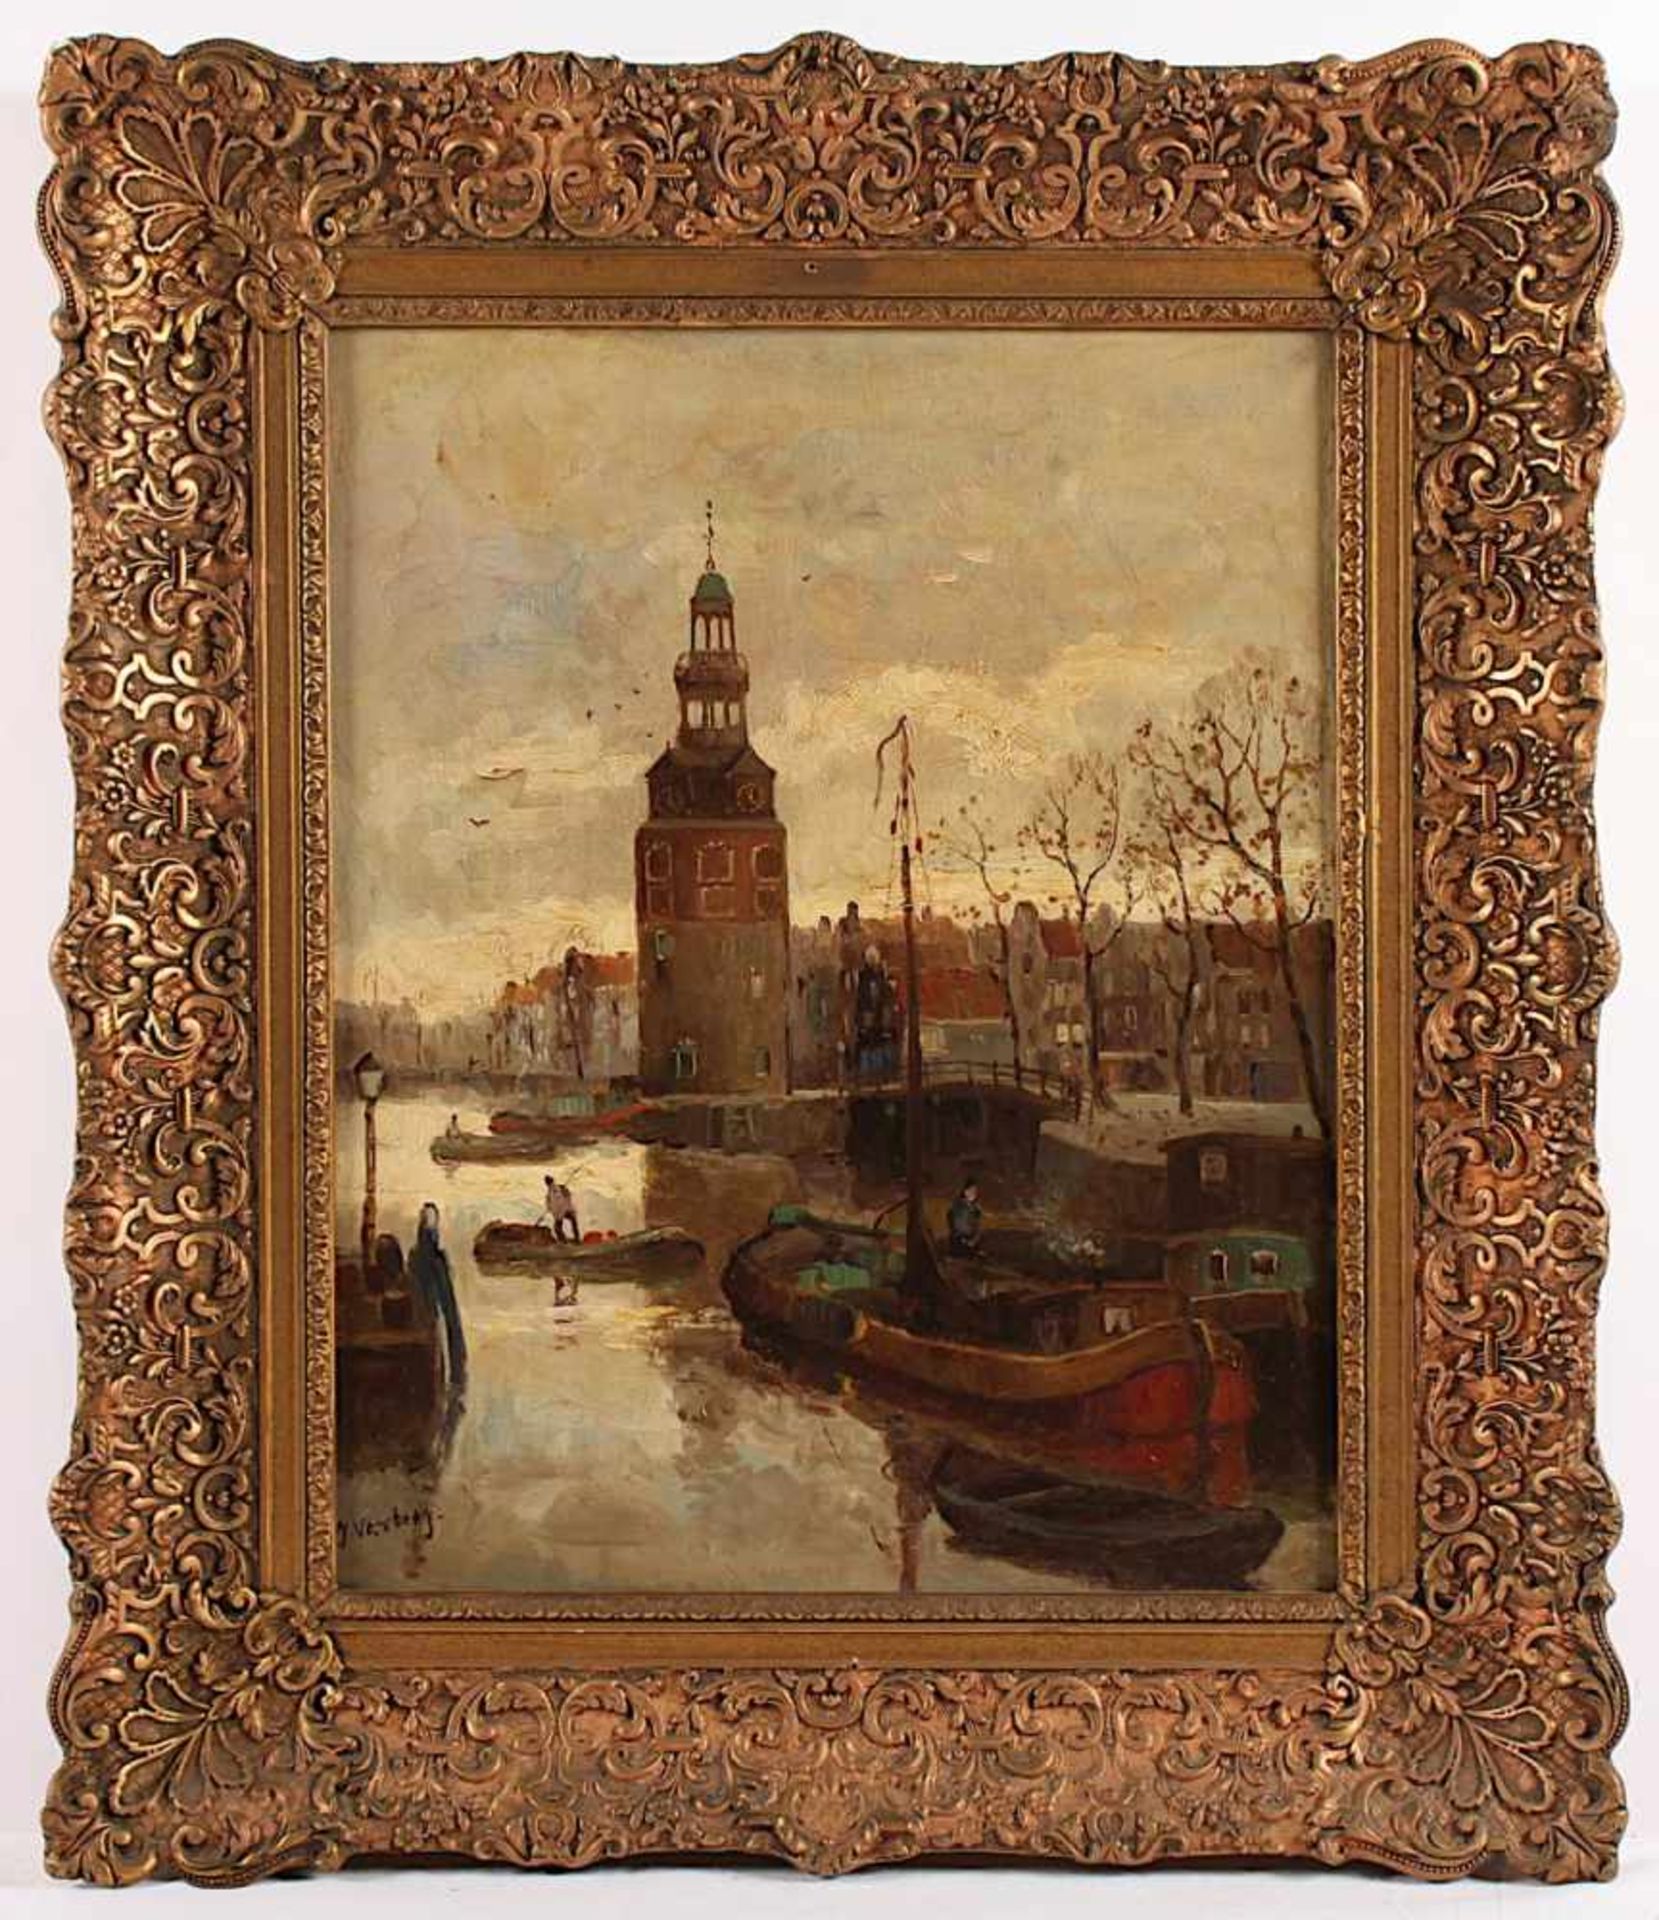 VERSTEEG, J. (Niederlande A.20.Jh.), "Blick auf den Montelbaanstoren in Amsterdam", Öl/Lwd., 51 x